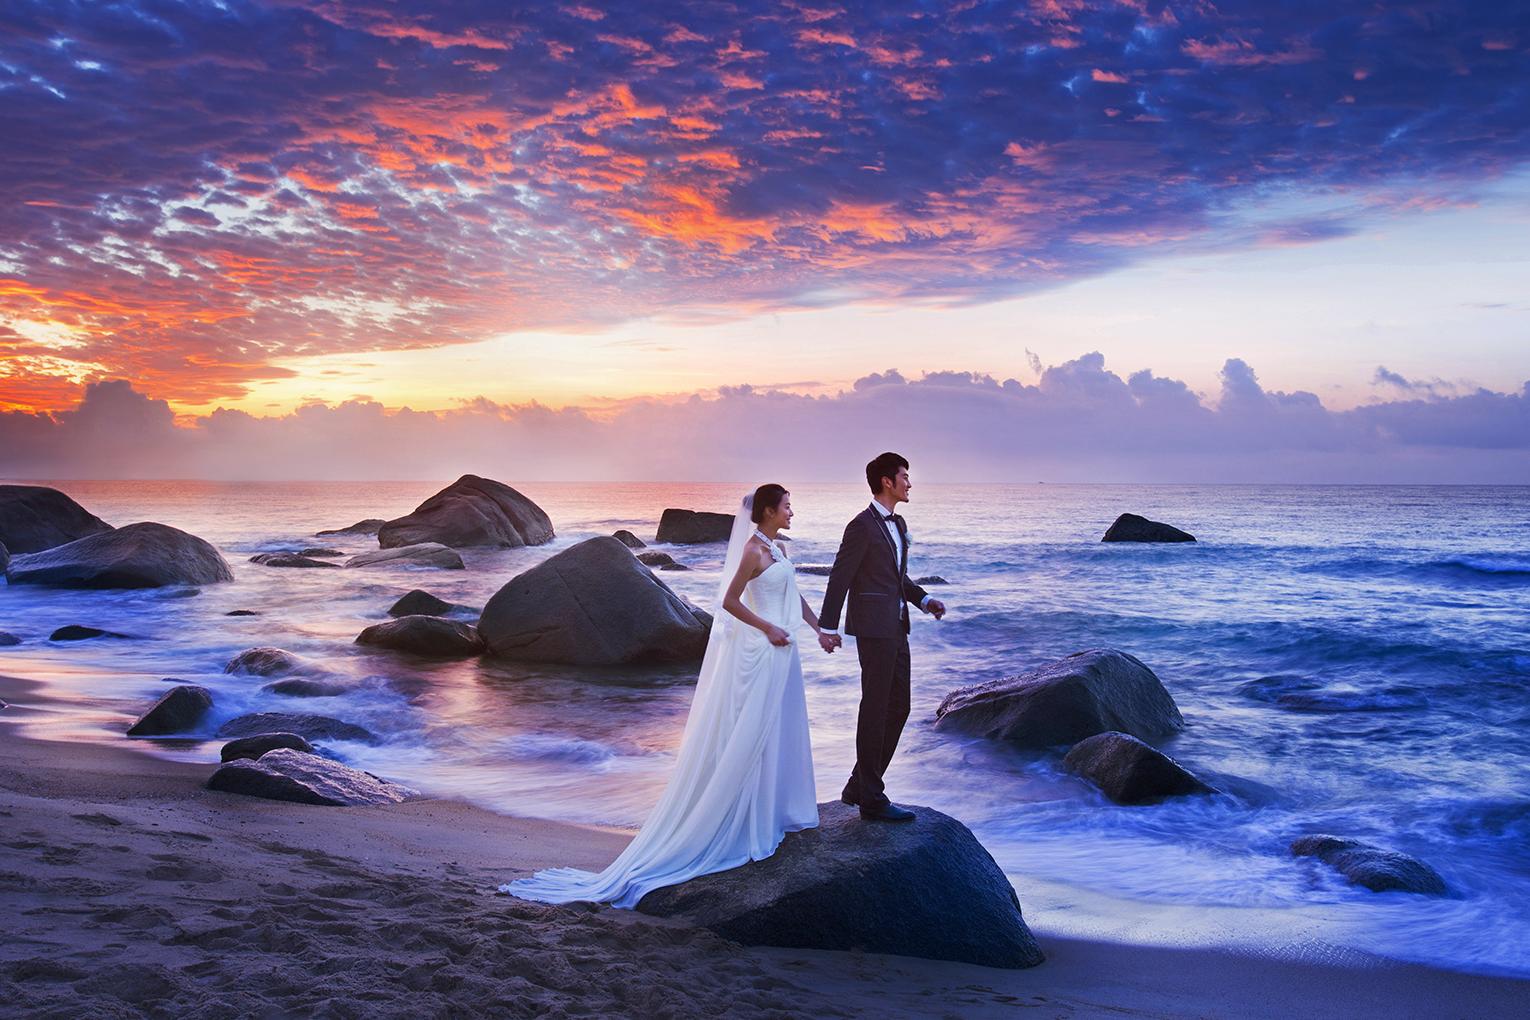 上川岛《海边婚礼》 - 拍摄地 - 广州婚纱摄影-广州古摄影官网